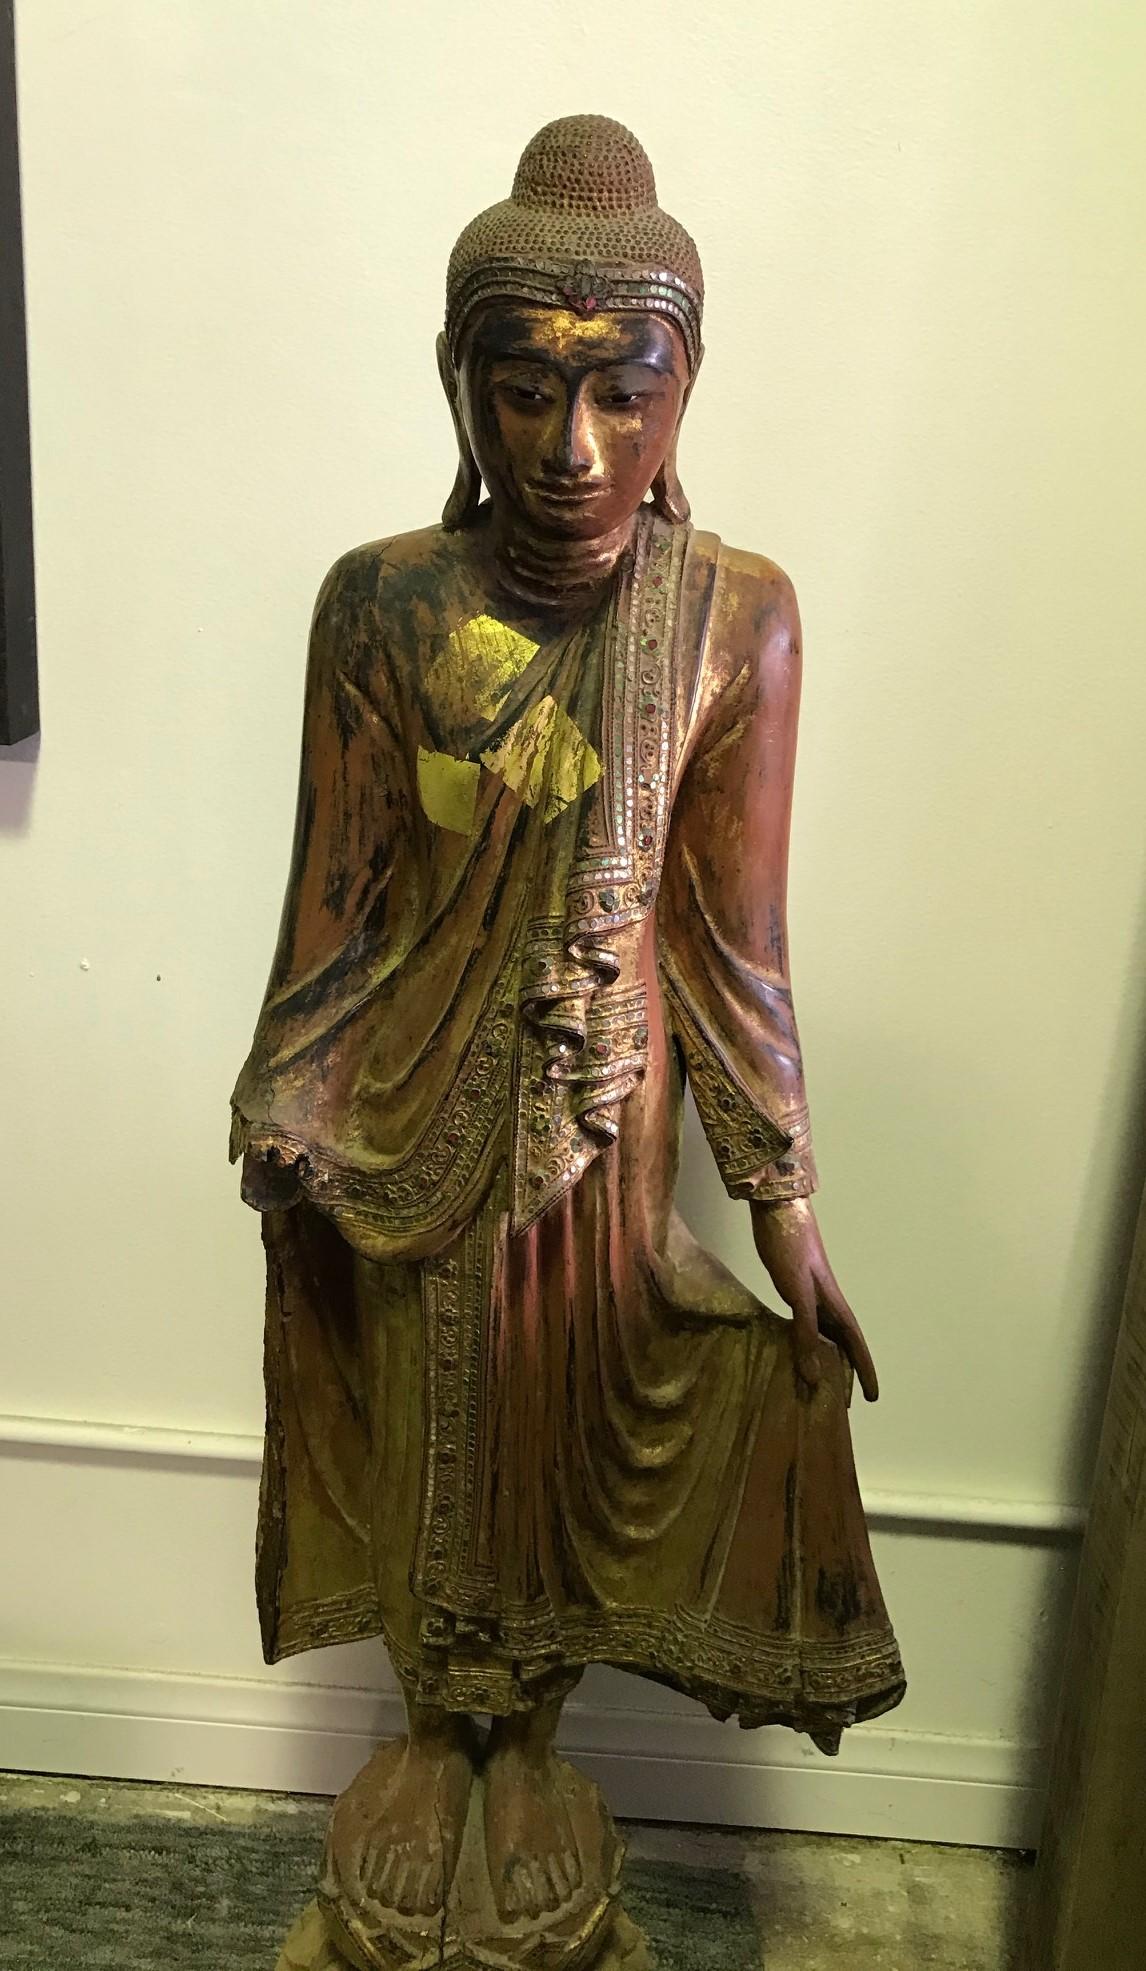 Grand Bouddha debout en bois sculpté à la main. Magnifiquement sculpté et finement détaillé. Probablement thaïlandais ou birman. Décorée de laque et de dorure (voir les plaques d'offre en dorure). Très unique et quelque peu difficile à trouver).